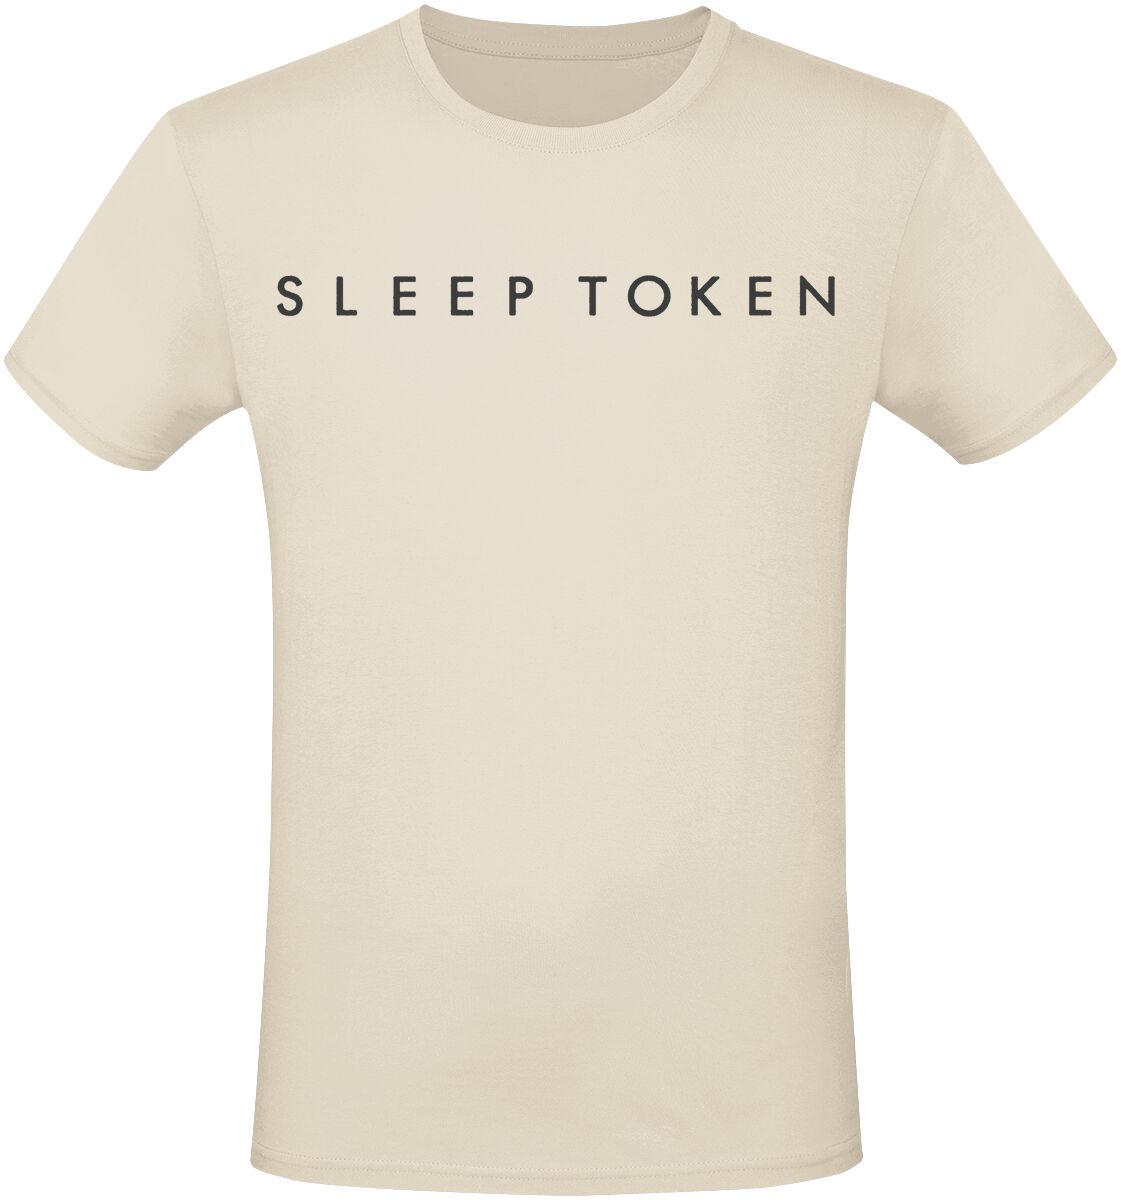 Sleep Token T-Shirt - Take Me Back To Eden - S bis 3XL - für Männer - Größe XL - beige  - EMP exklusives Merchandise!